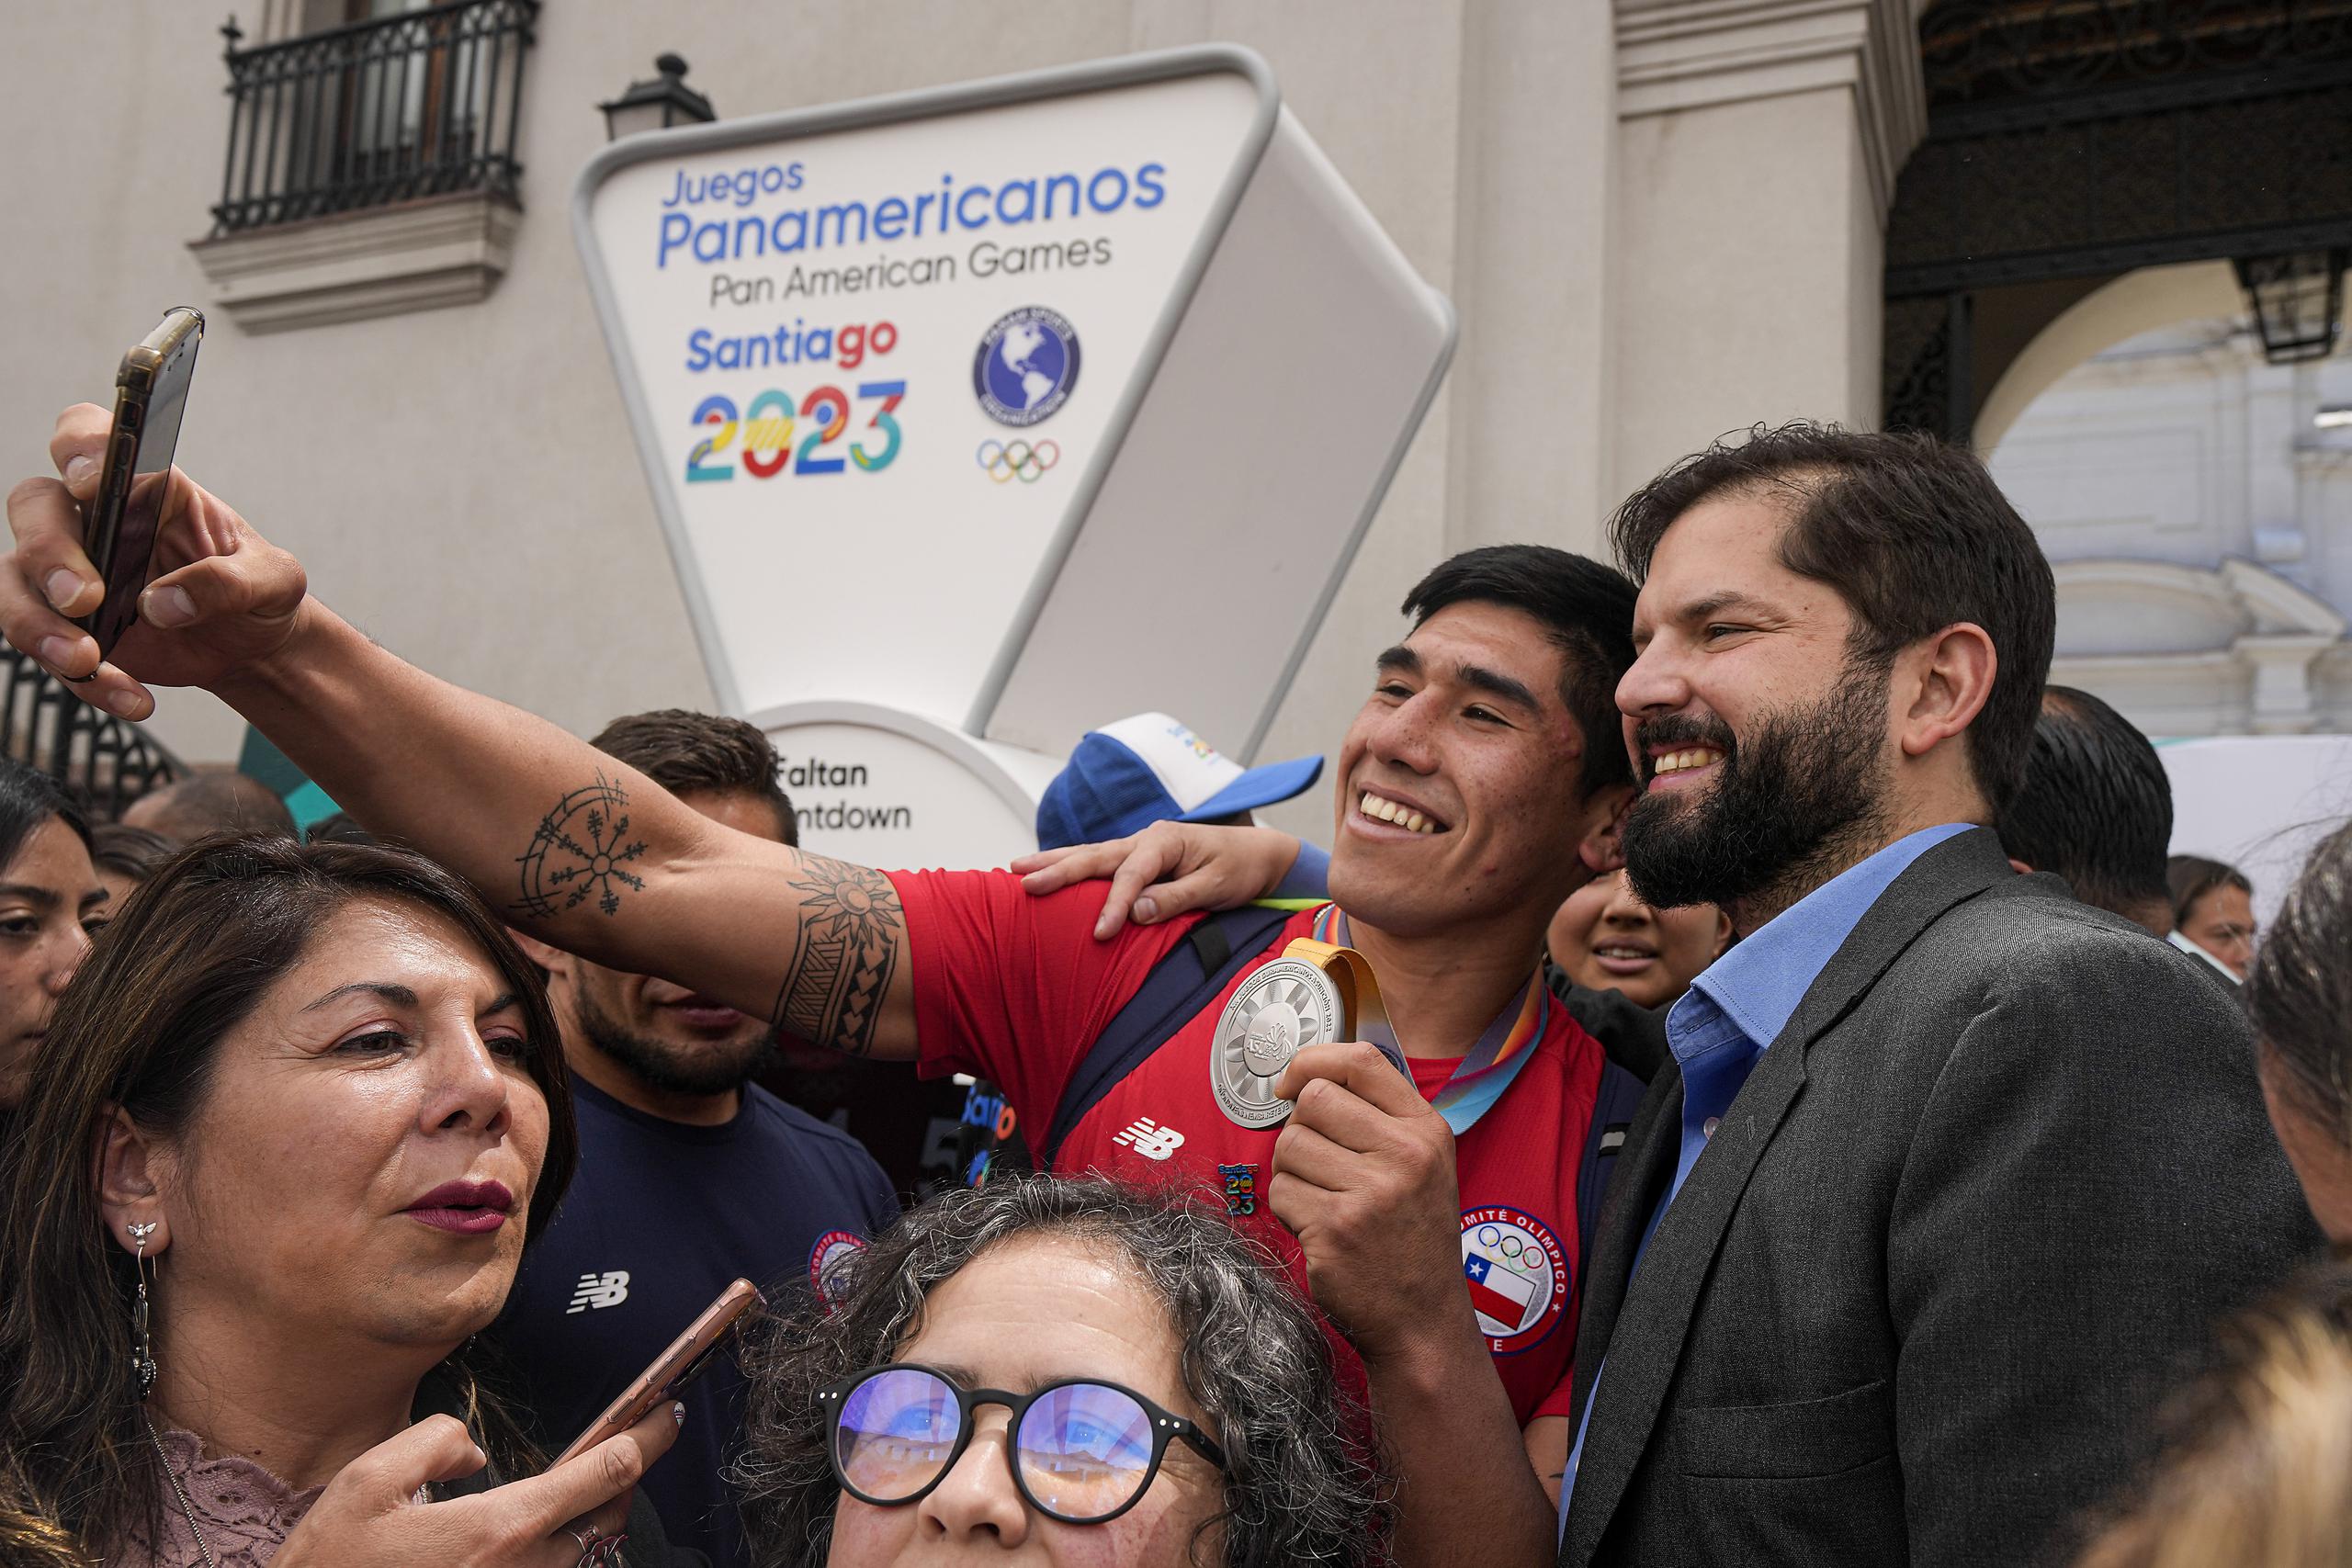 El presidente chileno Gabriel Boric posa para una selfie con un deportista chileno durante la ceremonia que marcó el inicio de la cuenta regresiva para los Juegos Panamericanos y Parapanamericanos de 2023 en el palacio presidencial en Santiago de Chile, hace casi un año atrás.